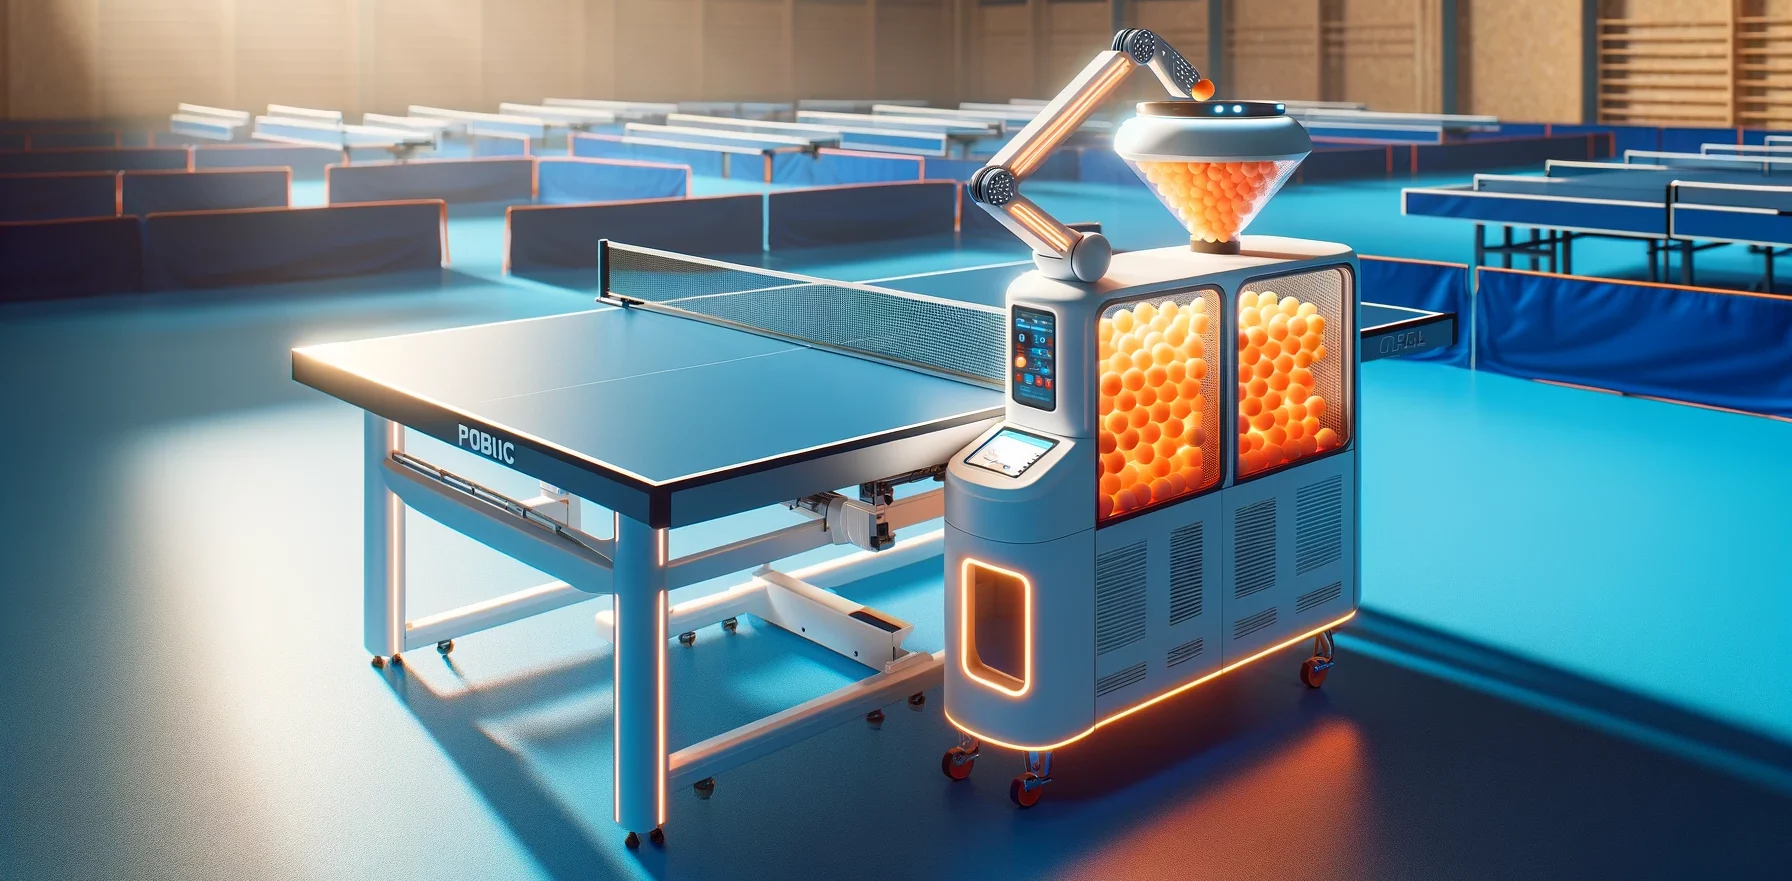 Foto einer modernen Tischtennisballmaschine, die an einem Ende einer blauen Tischtennisplatte in einer hell erleuchteten Sporthalle steht.